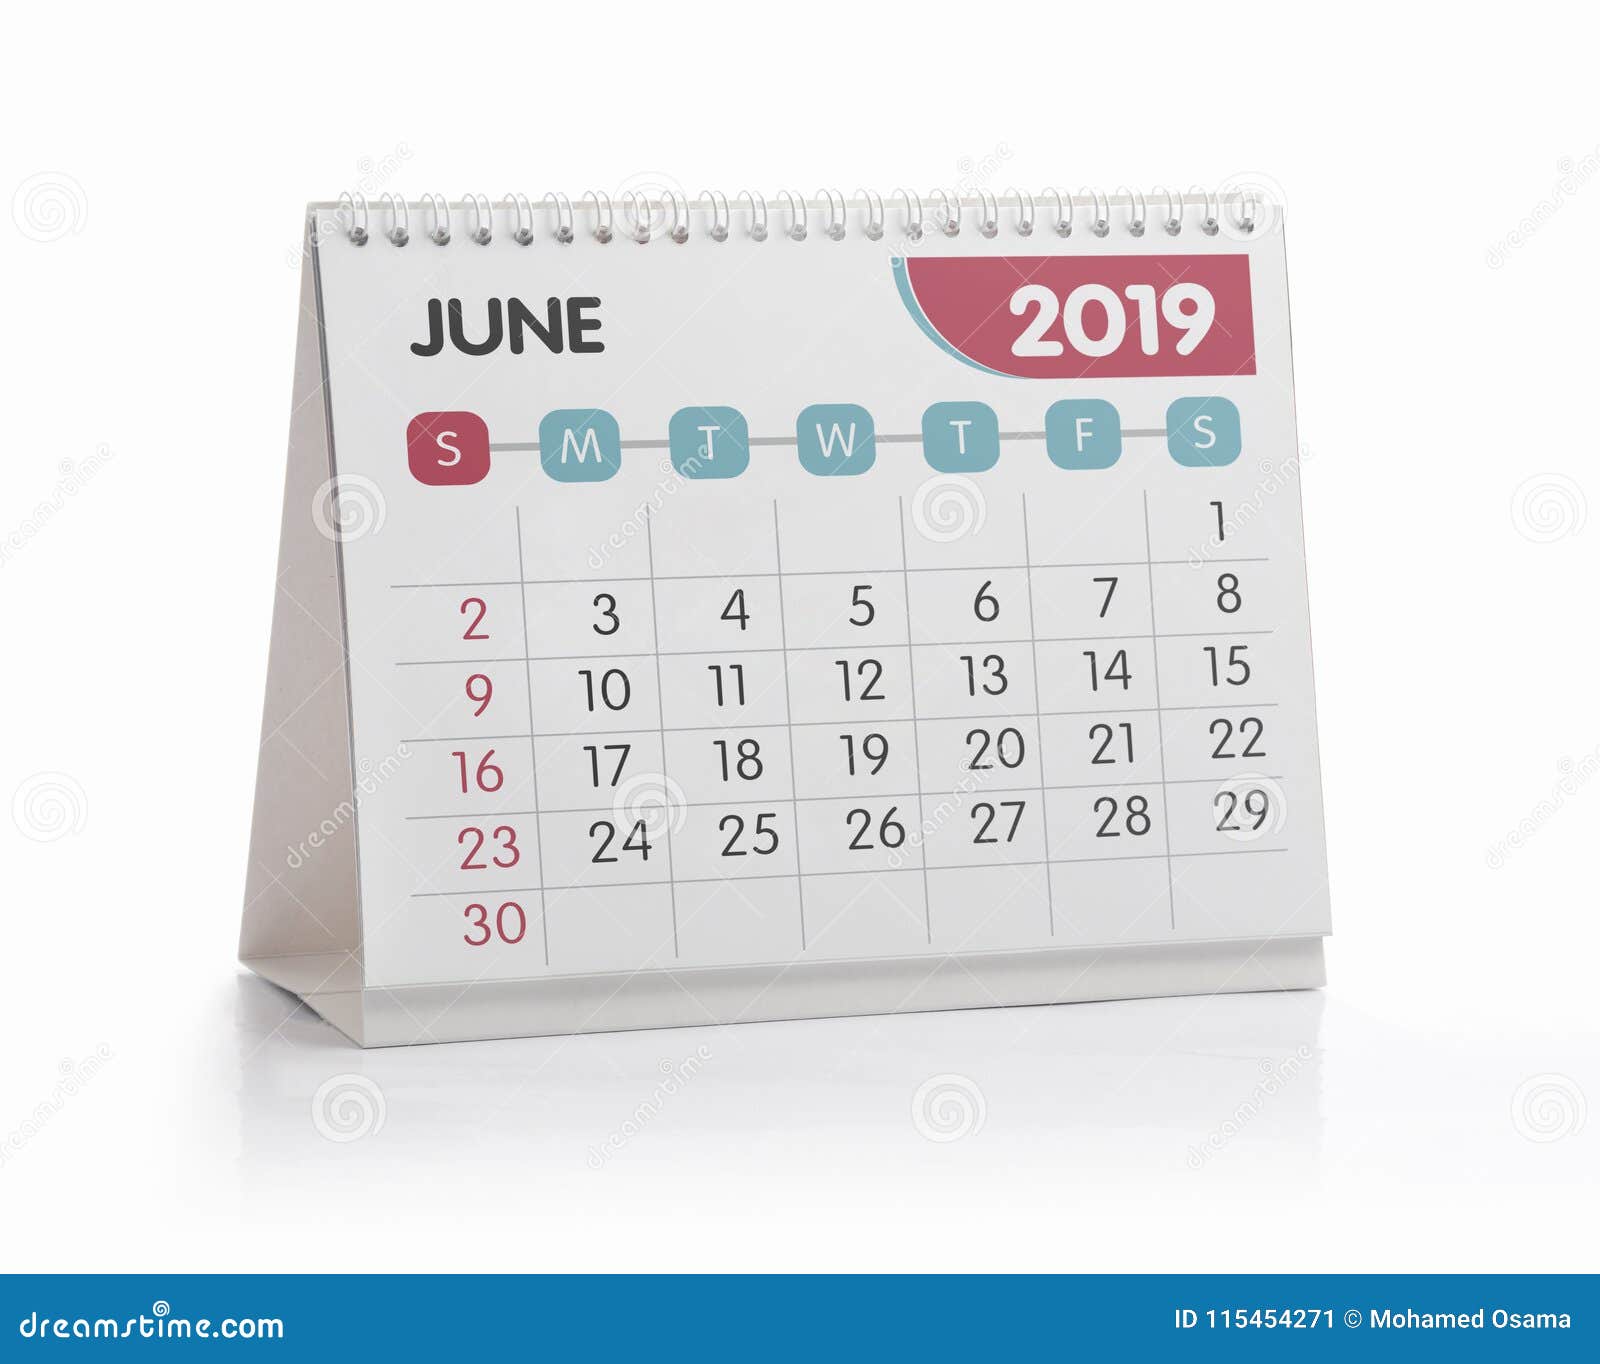 office calendar 2019 june